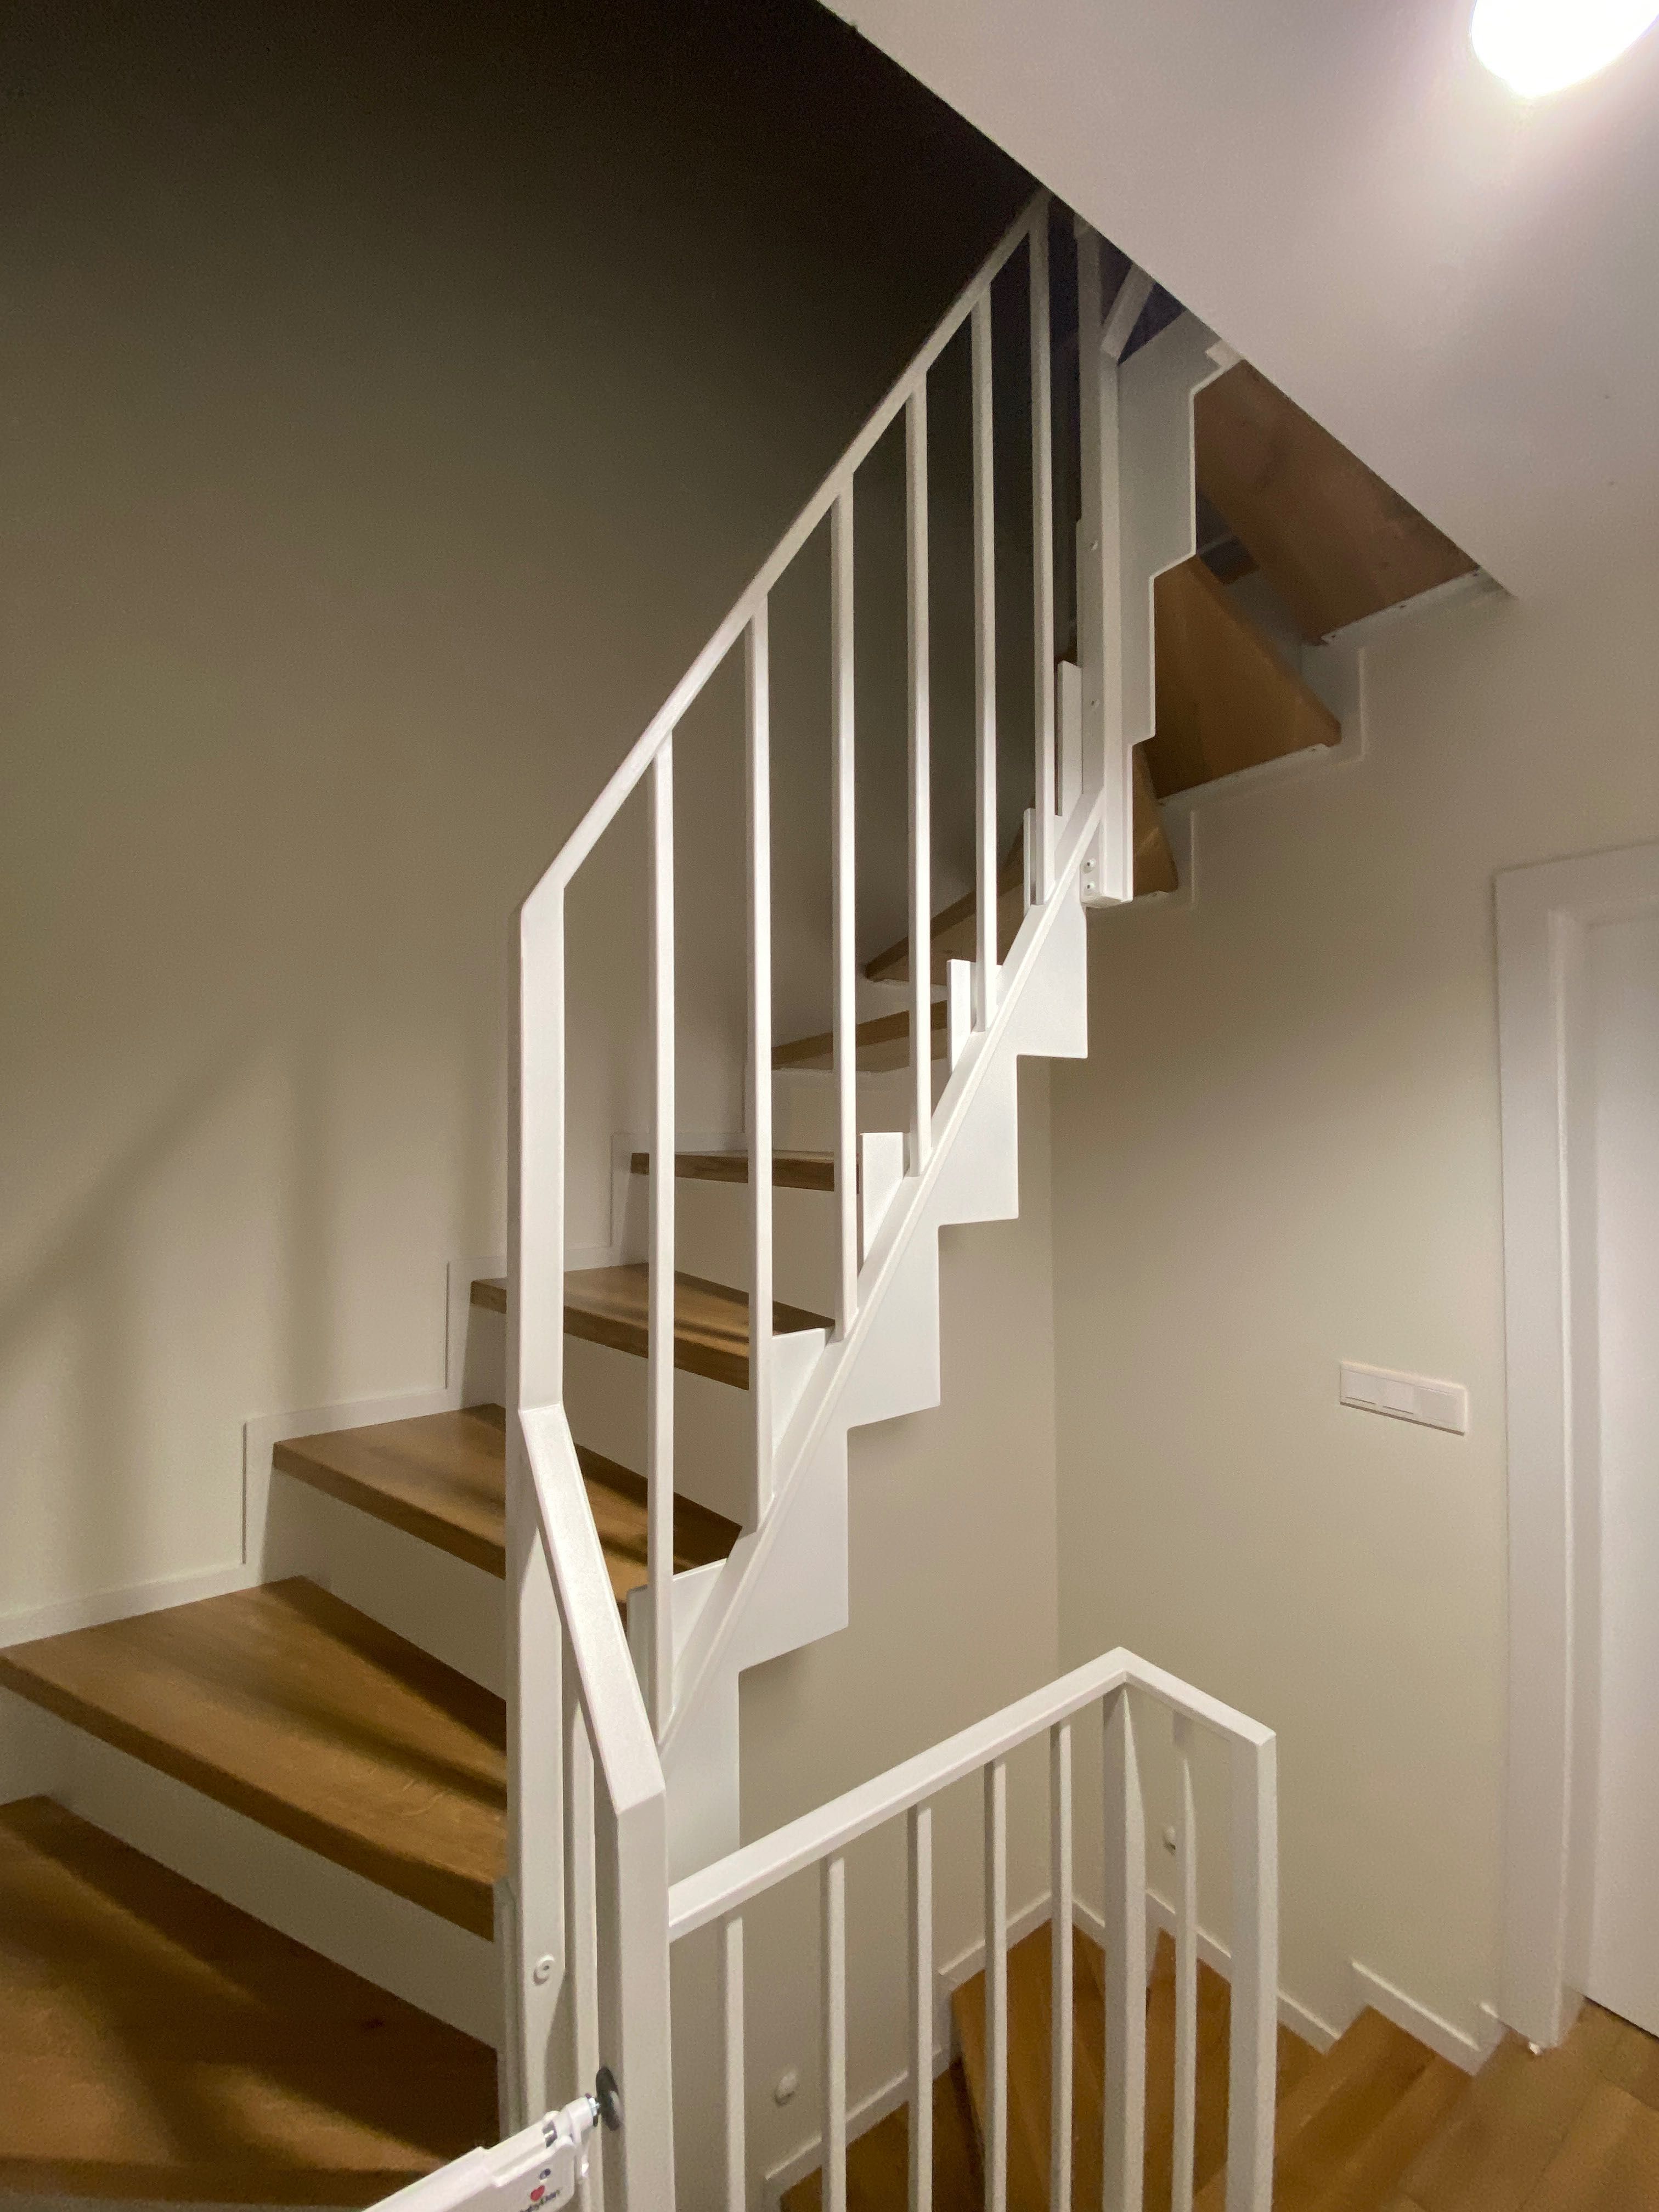 Stalowe schody wewnętrzne stopnie dębowe styl industrialny loft